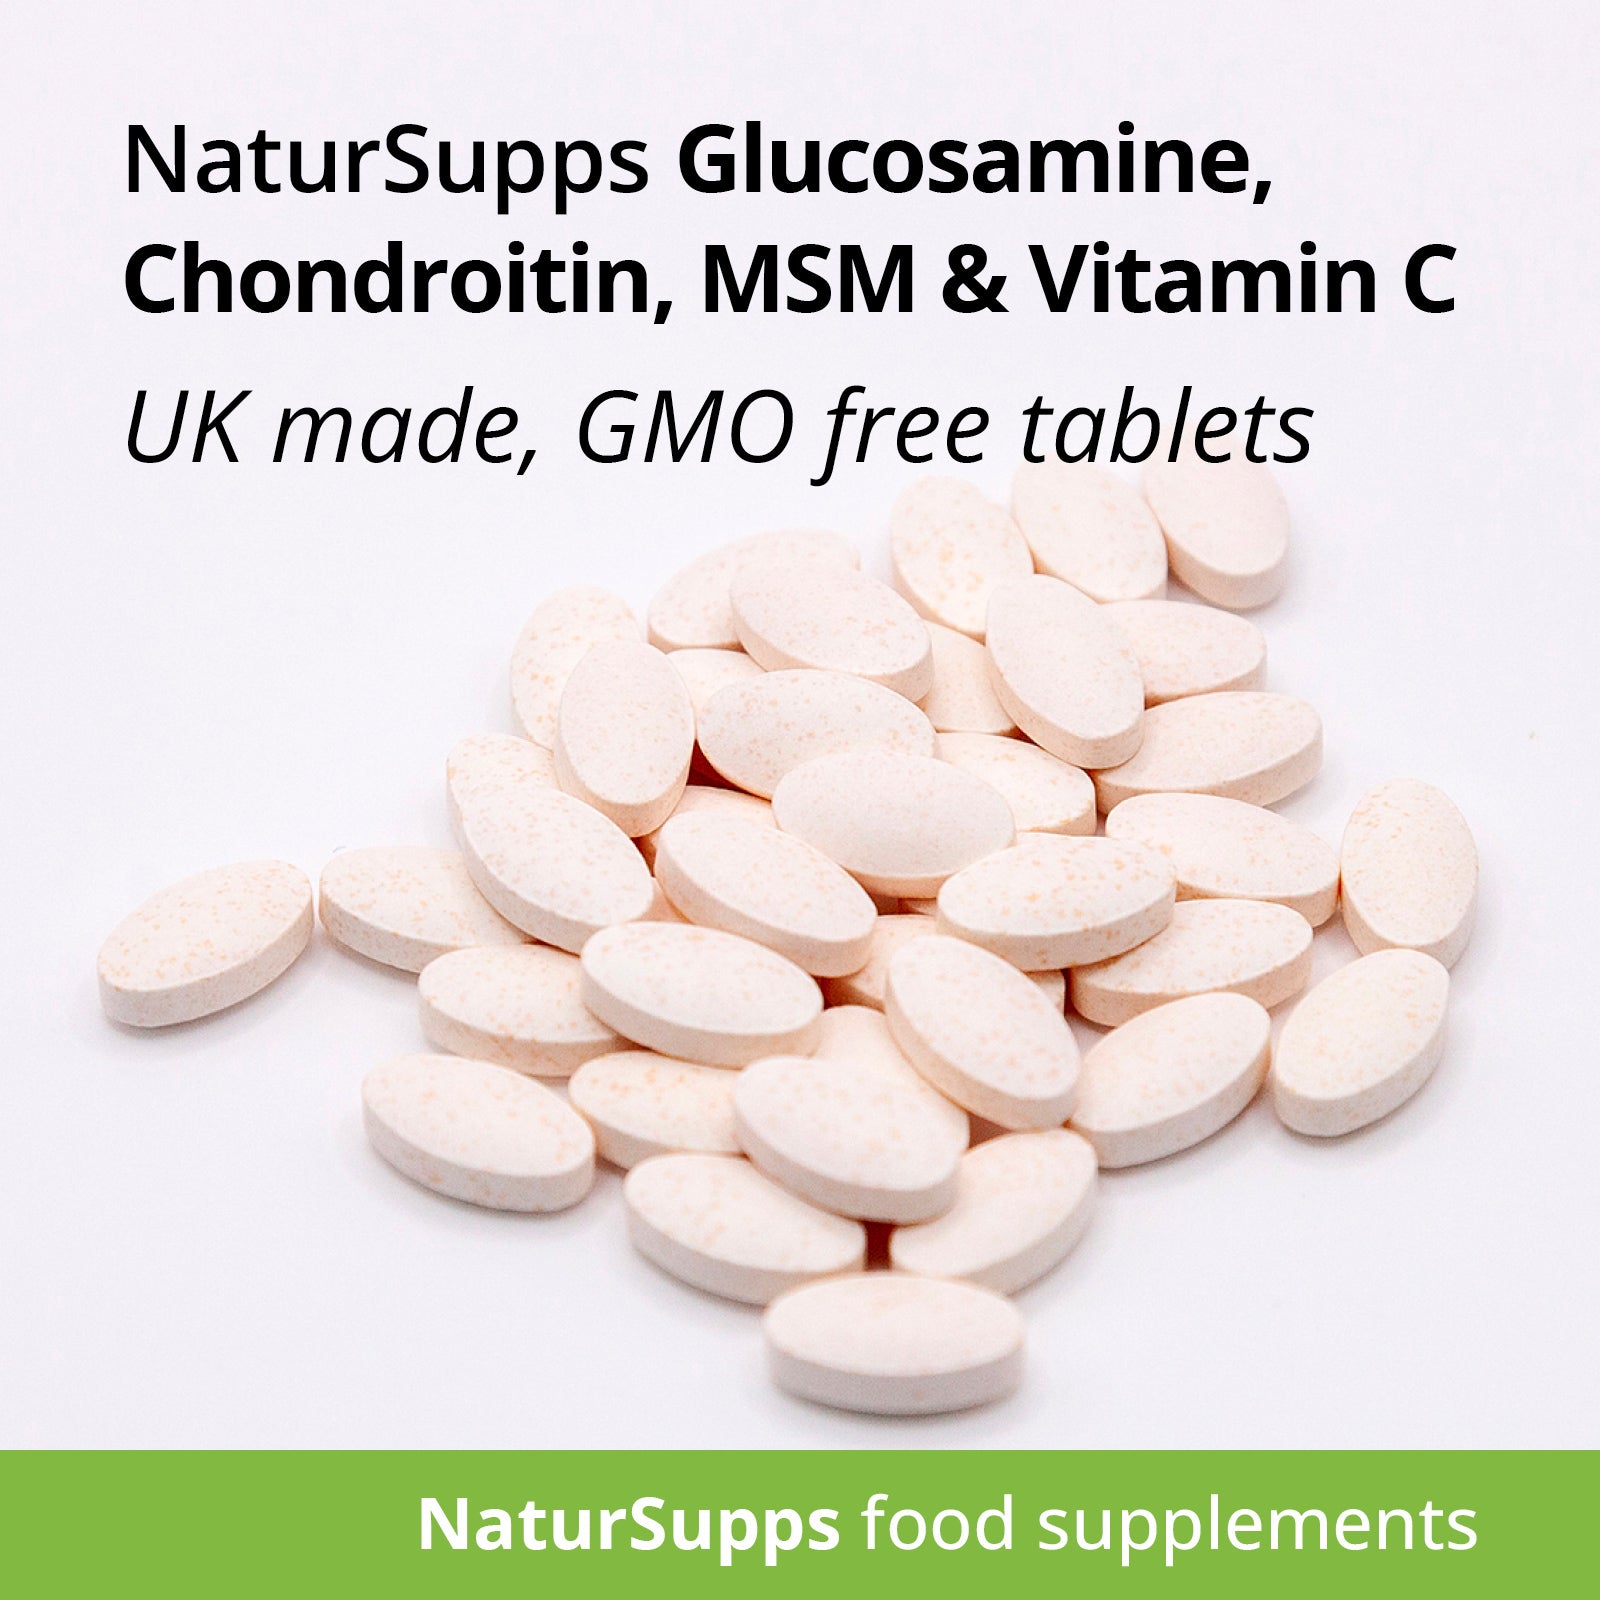 Glucosamine 400mg, Chondroitin 100mg,  MSM 50mg and Vitamin C 60mg tablets